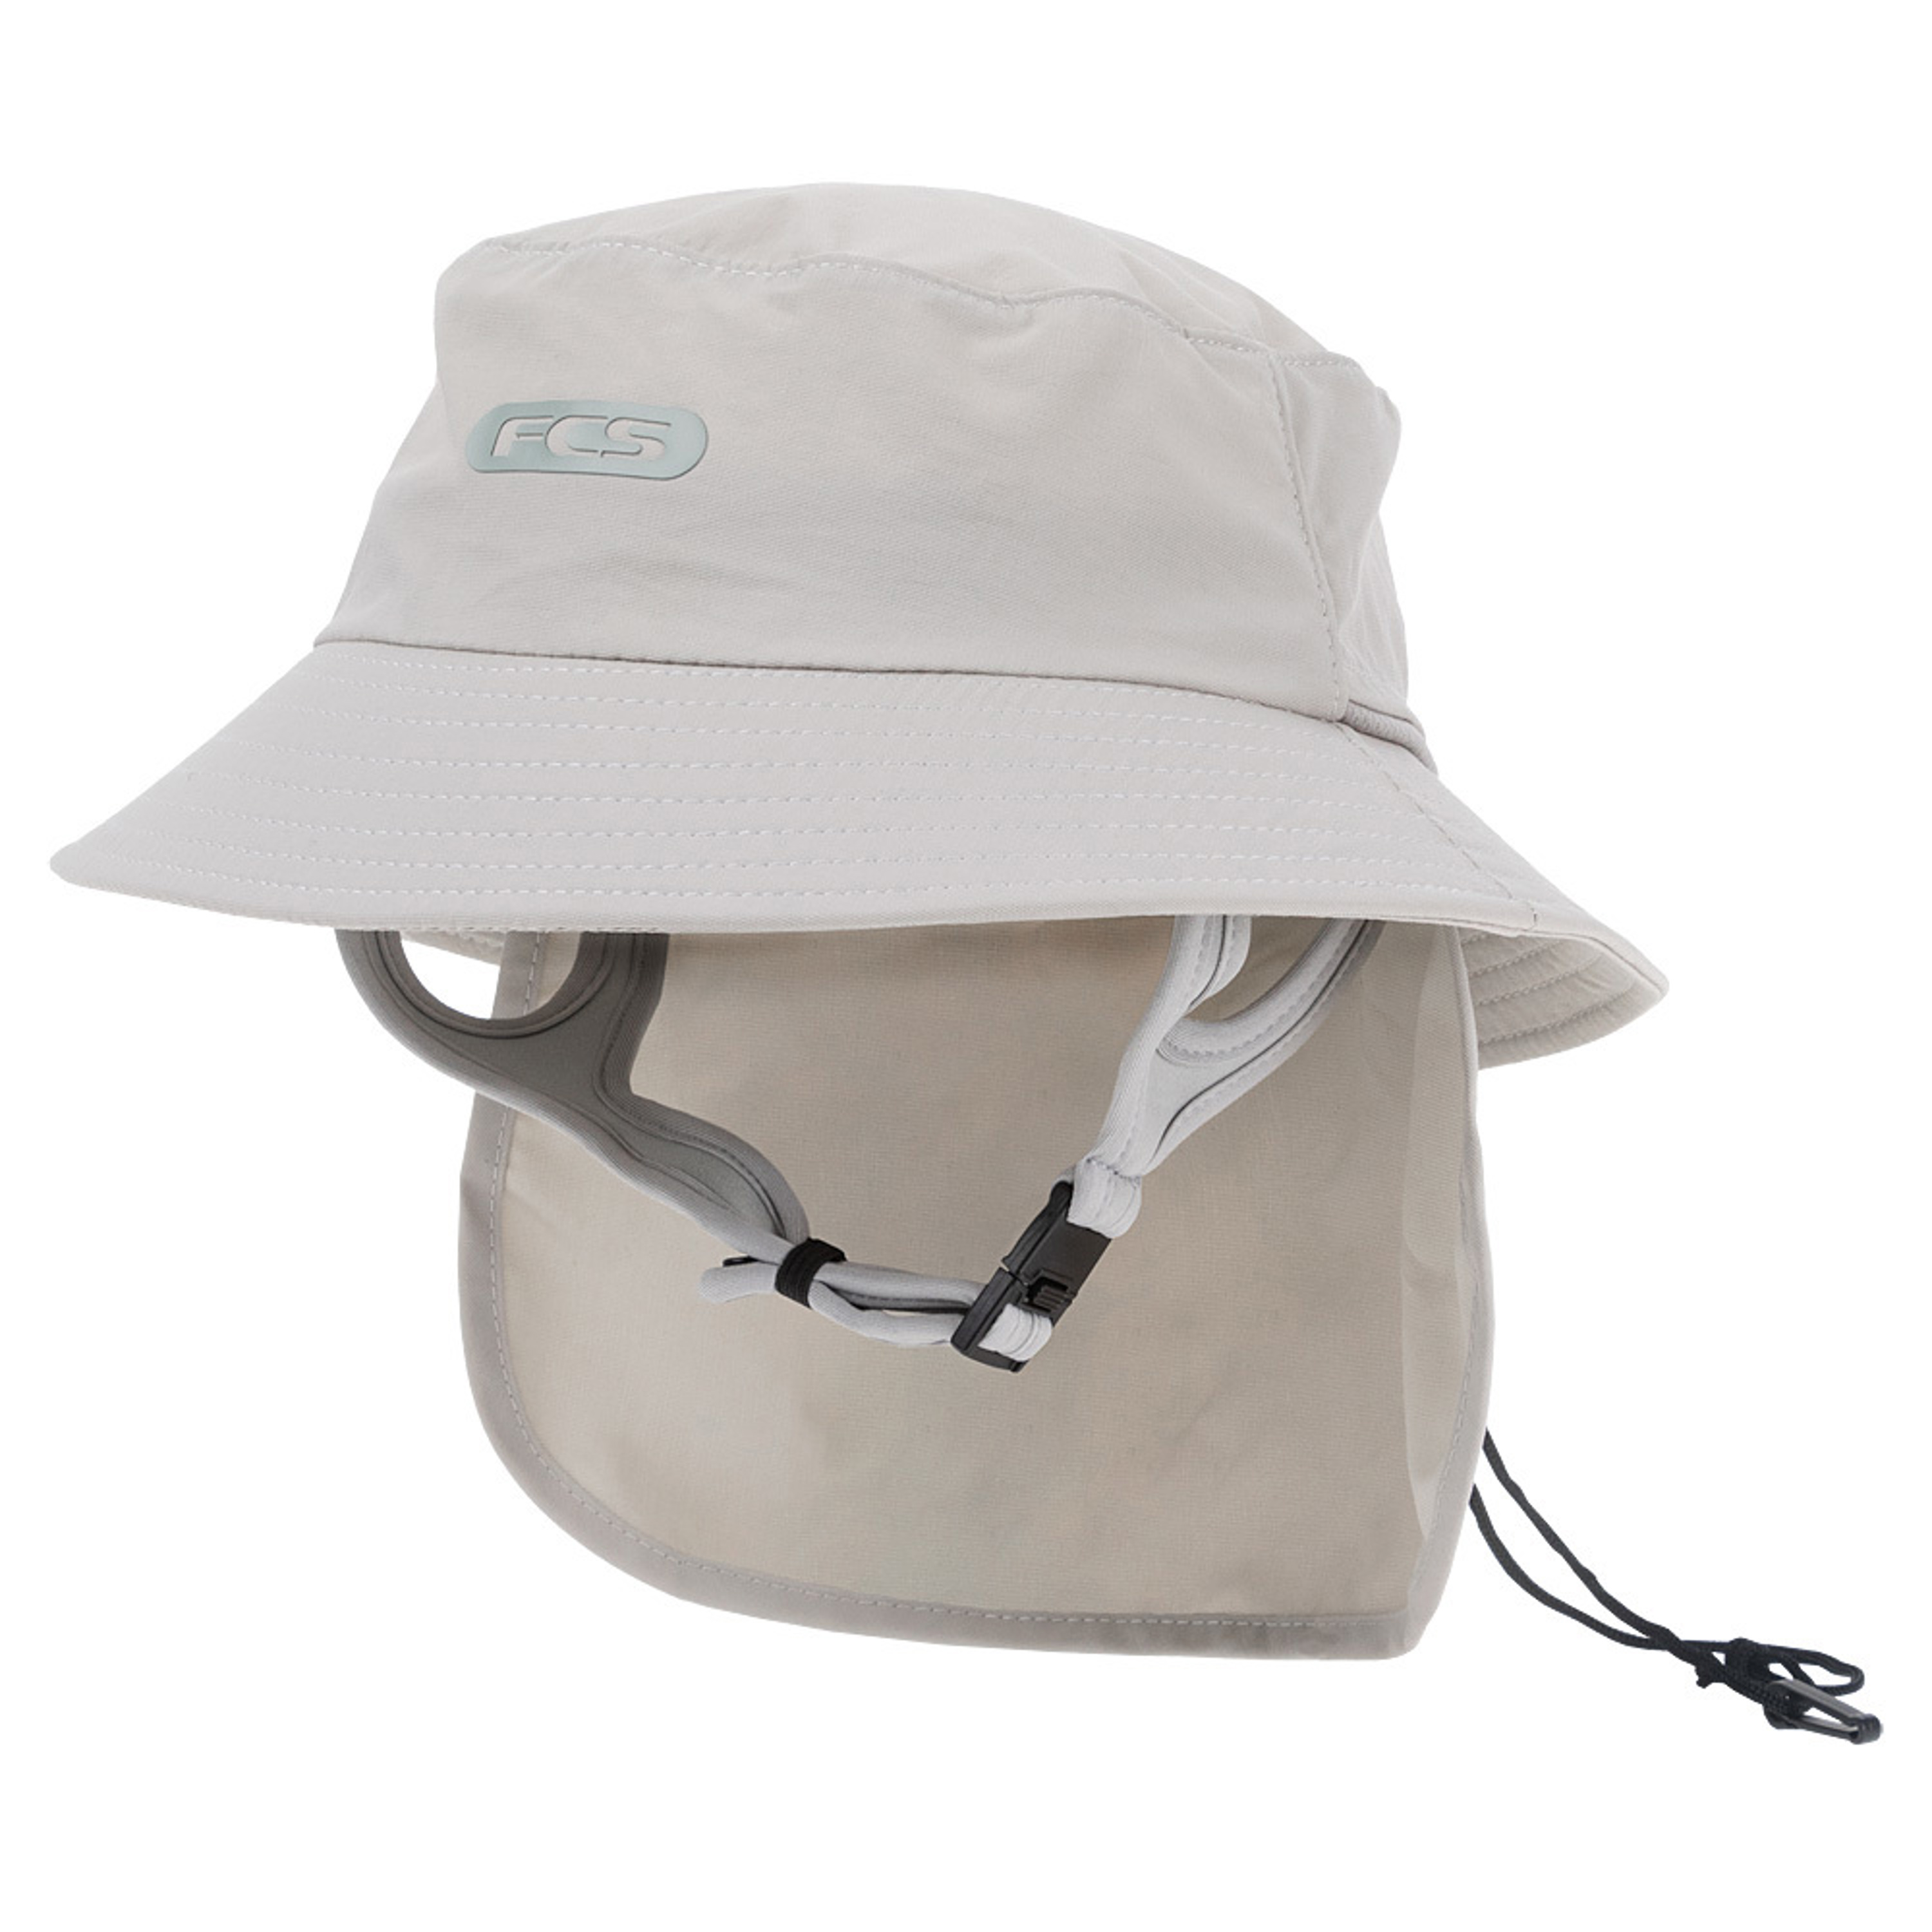 FCS Wet Bucket Surf Hat - Sand - M